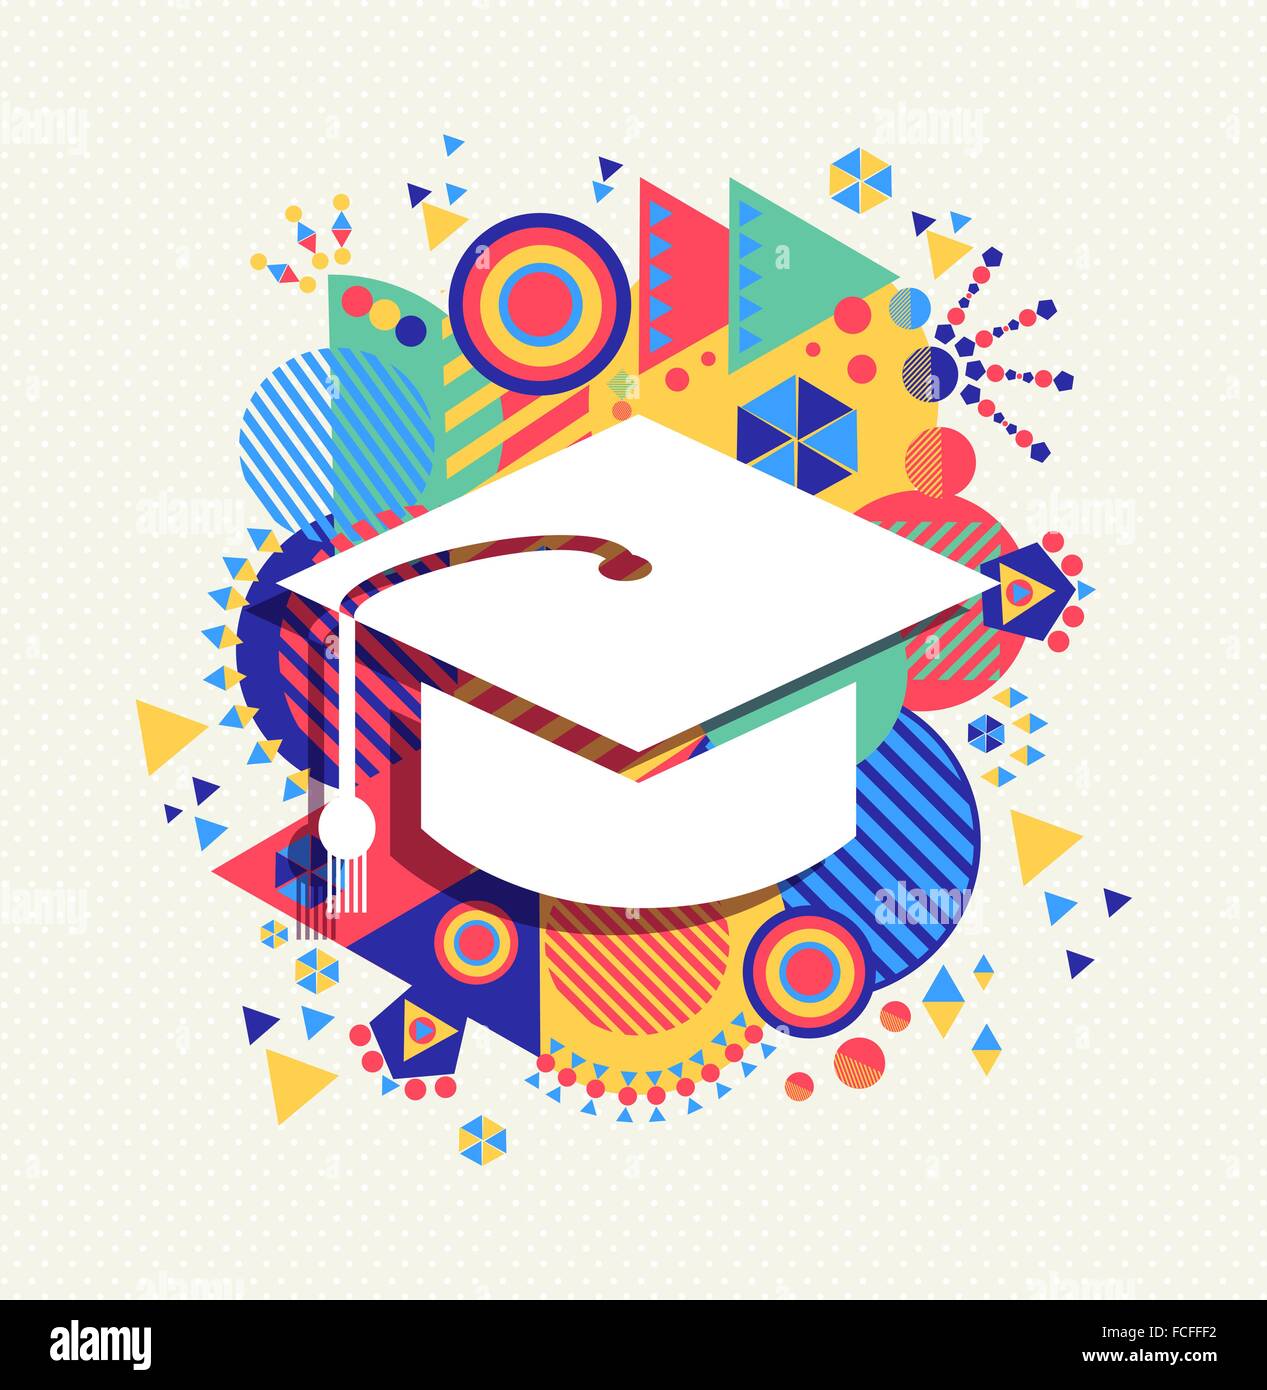 College graduation cap icône, l'éducation scolaire concept design aux couleurs de fond de l'élément de la géométrie. Vecteur EPS10. Illustration de Vecteur